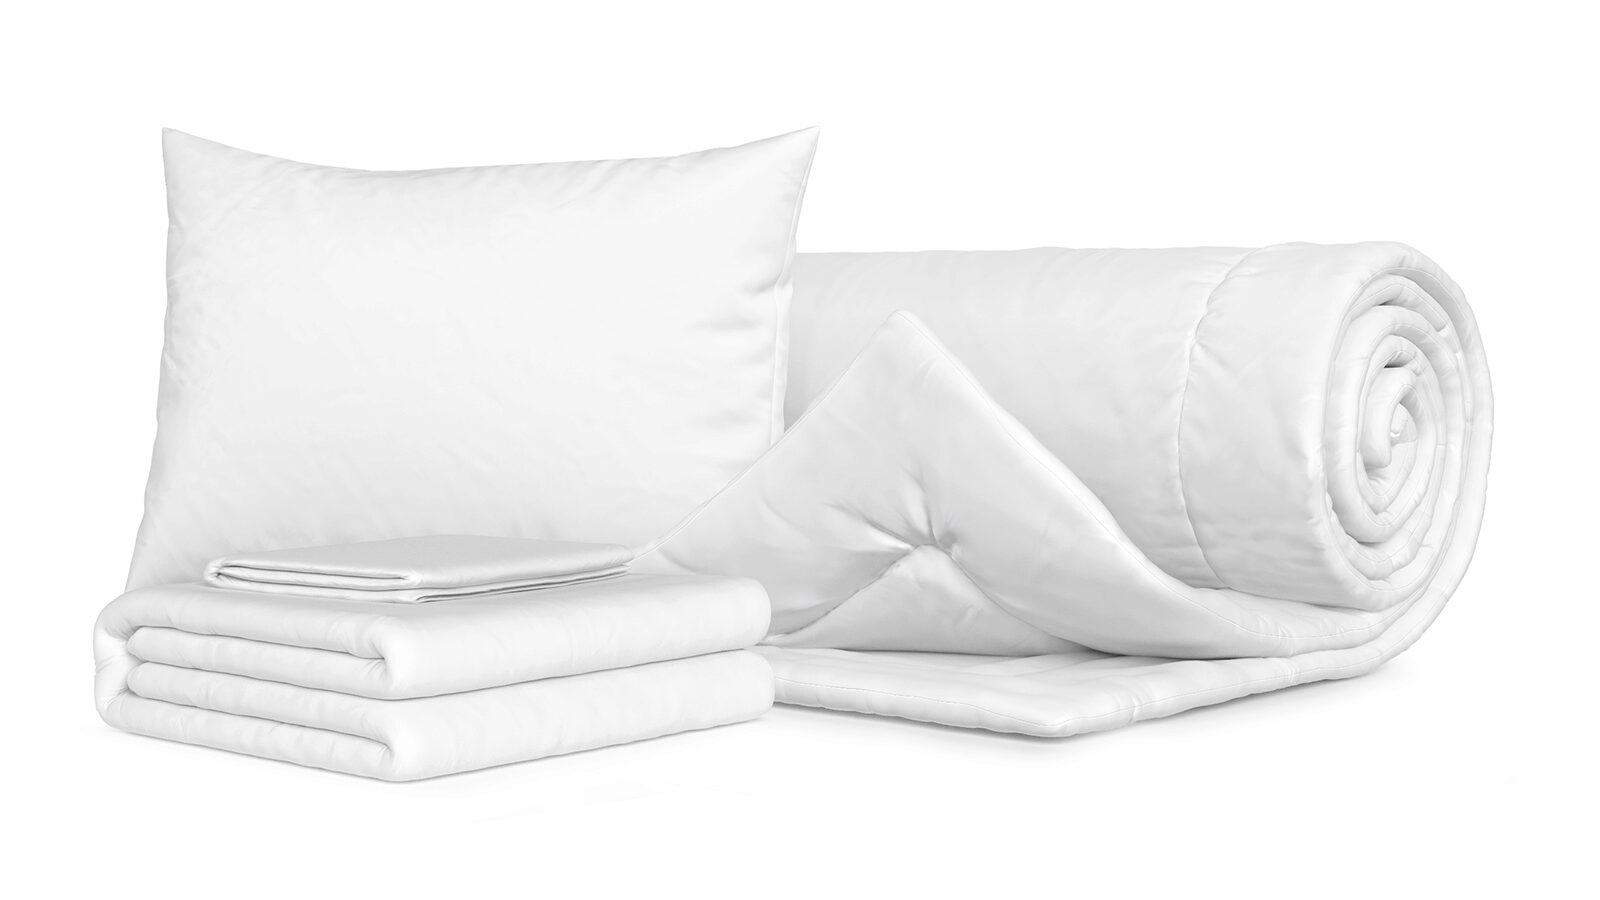 Комплект Одеяло Beat + Подушка Sky + Комплект постельного белья Comfort Cotton, цвет: Белый подушка мягкая relax f 55 для собак